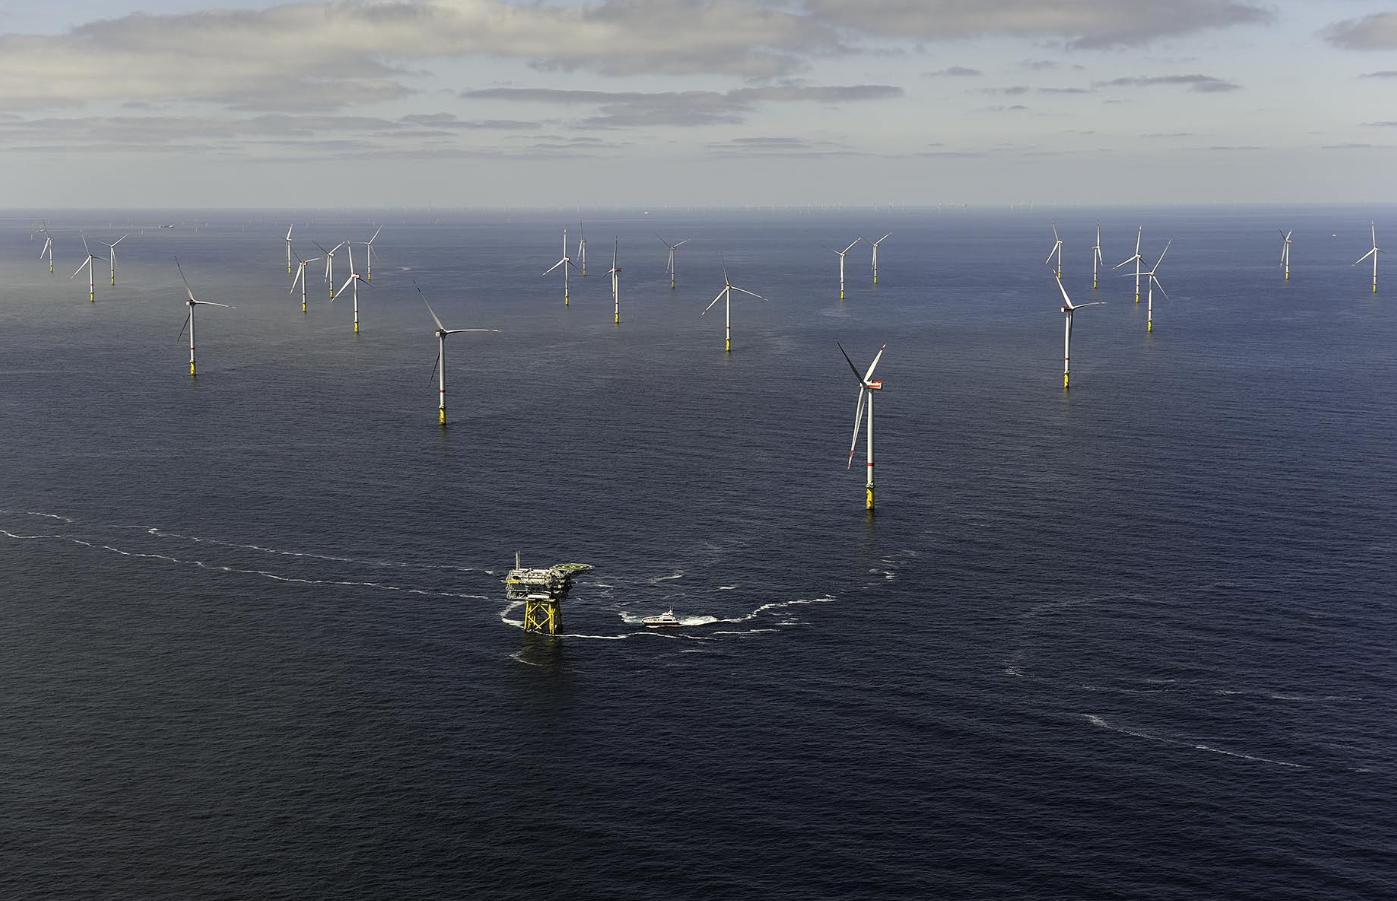 German airport operator seeks offshore wind power